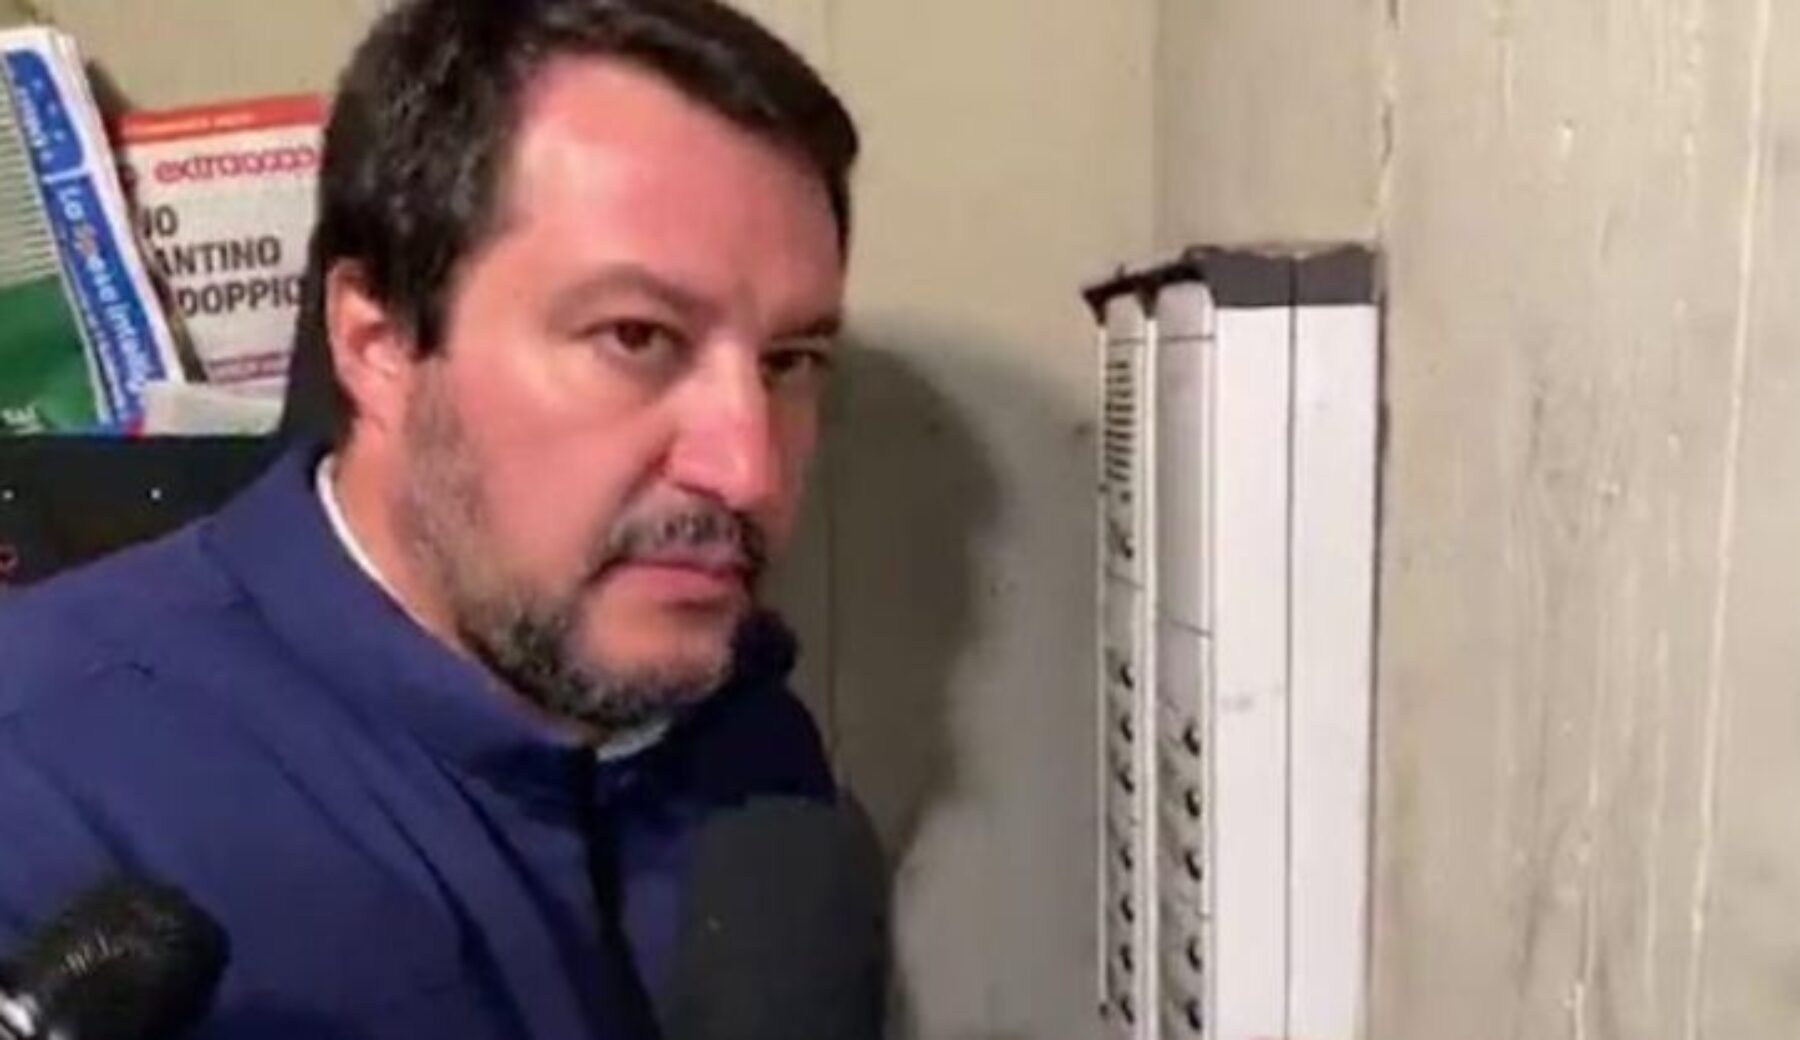 Salvini che citofona, Facebook rimuove il video perché viola la policy per “incitamento all’odio”